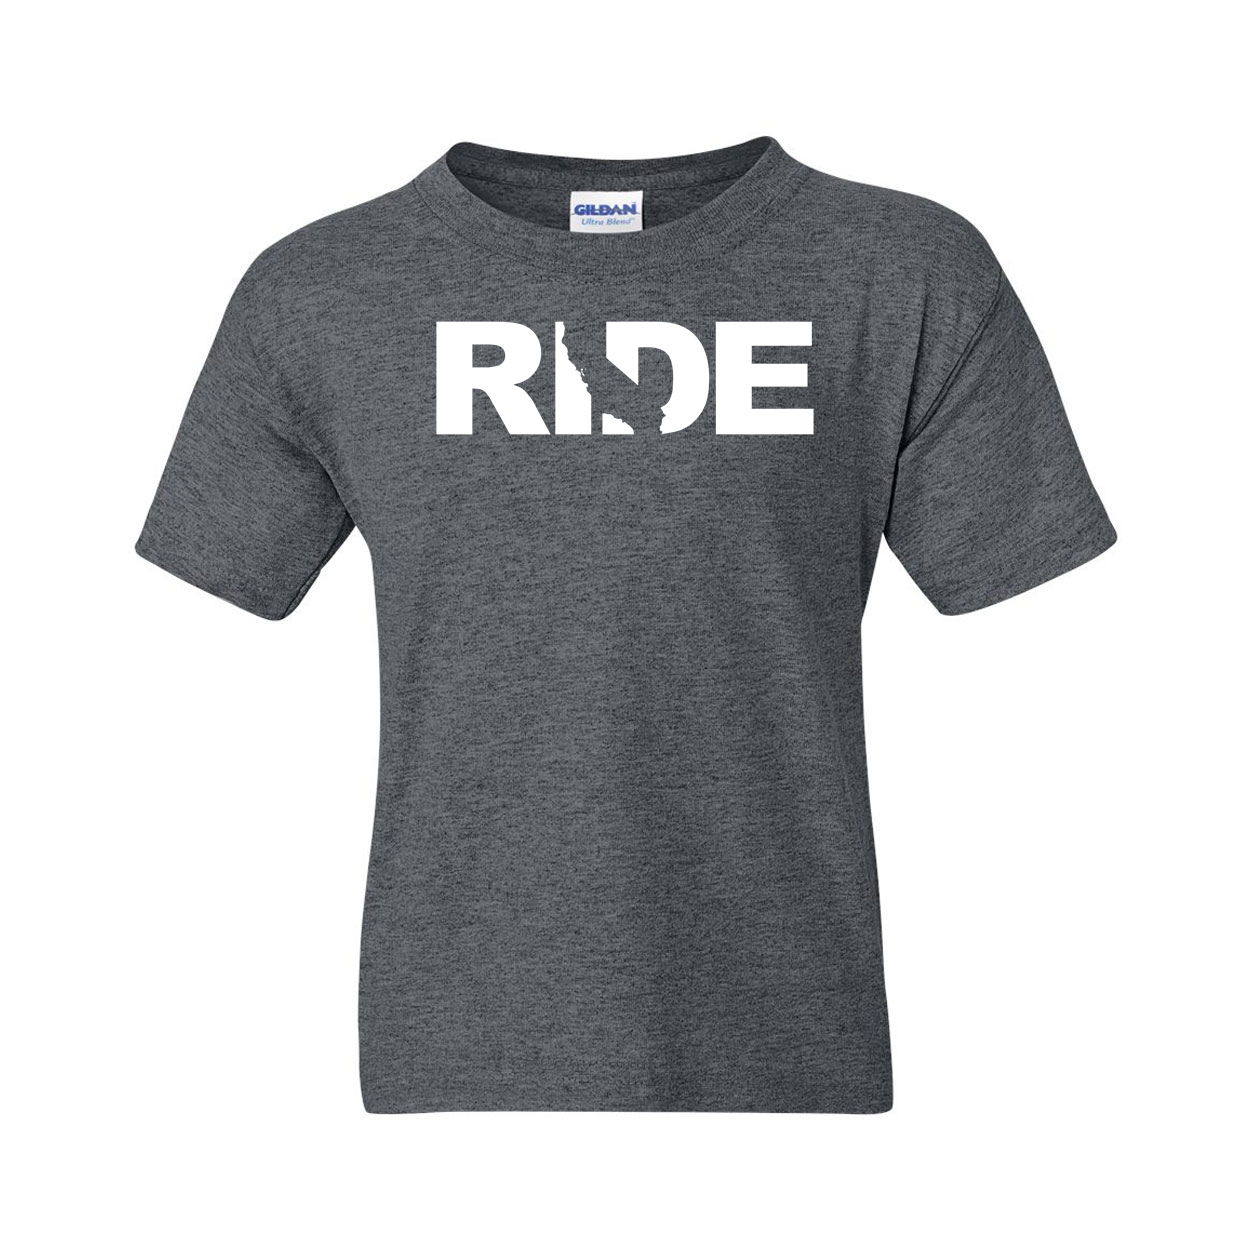 Ride California Classic Youth T-Shirt Dark Heather Gray (White Logo)